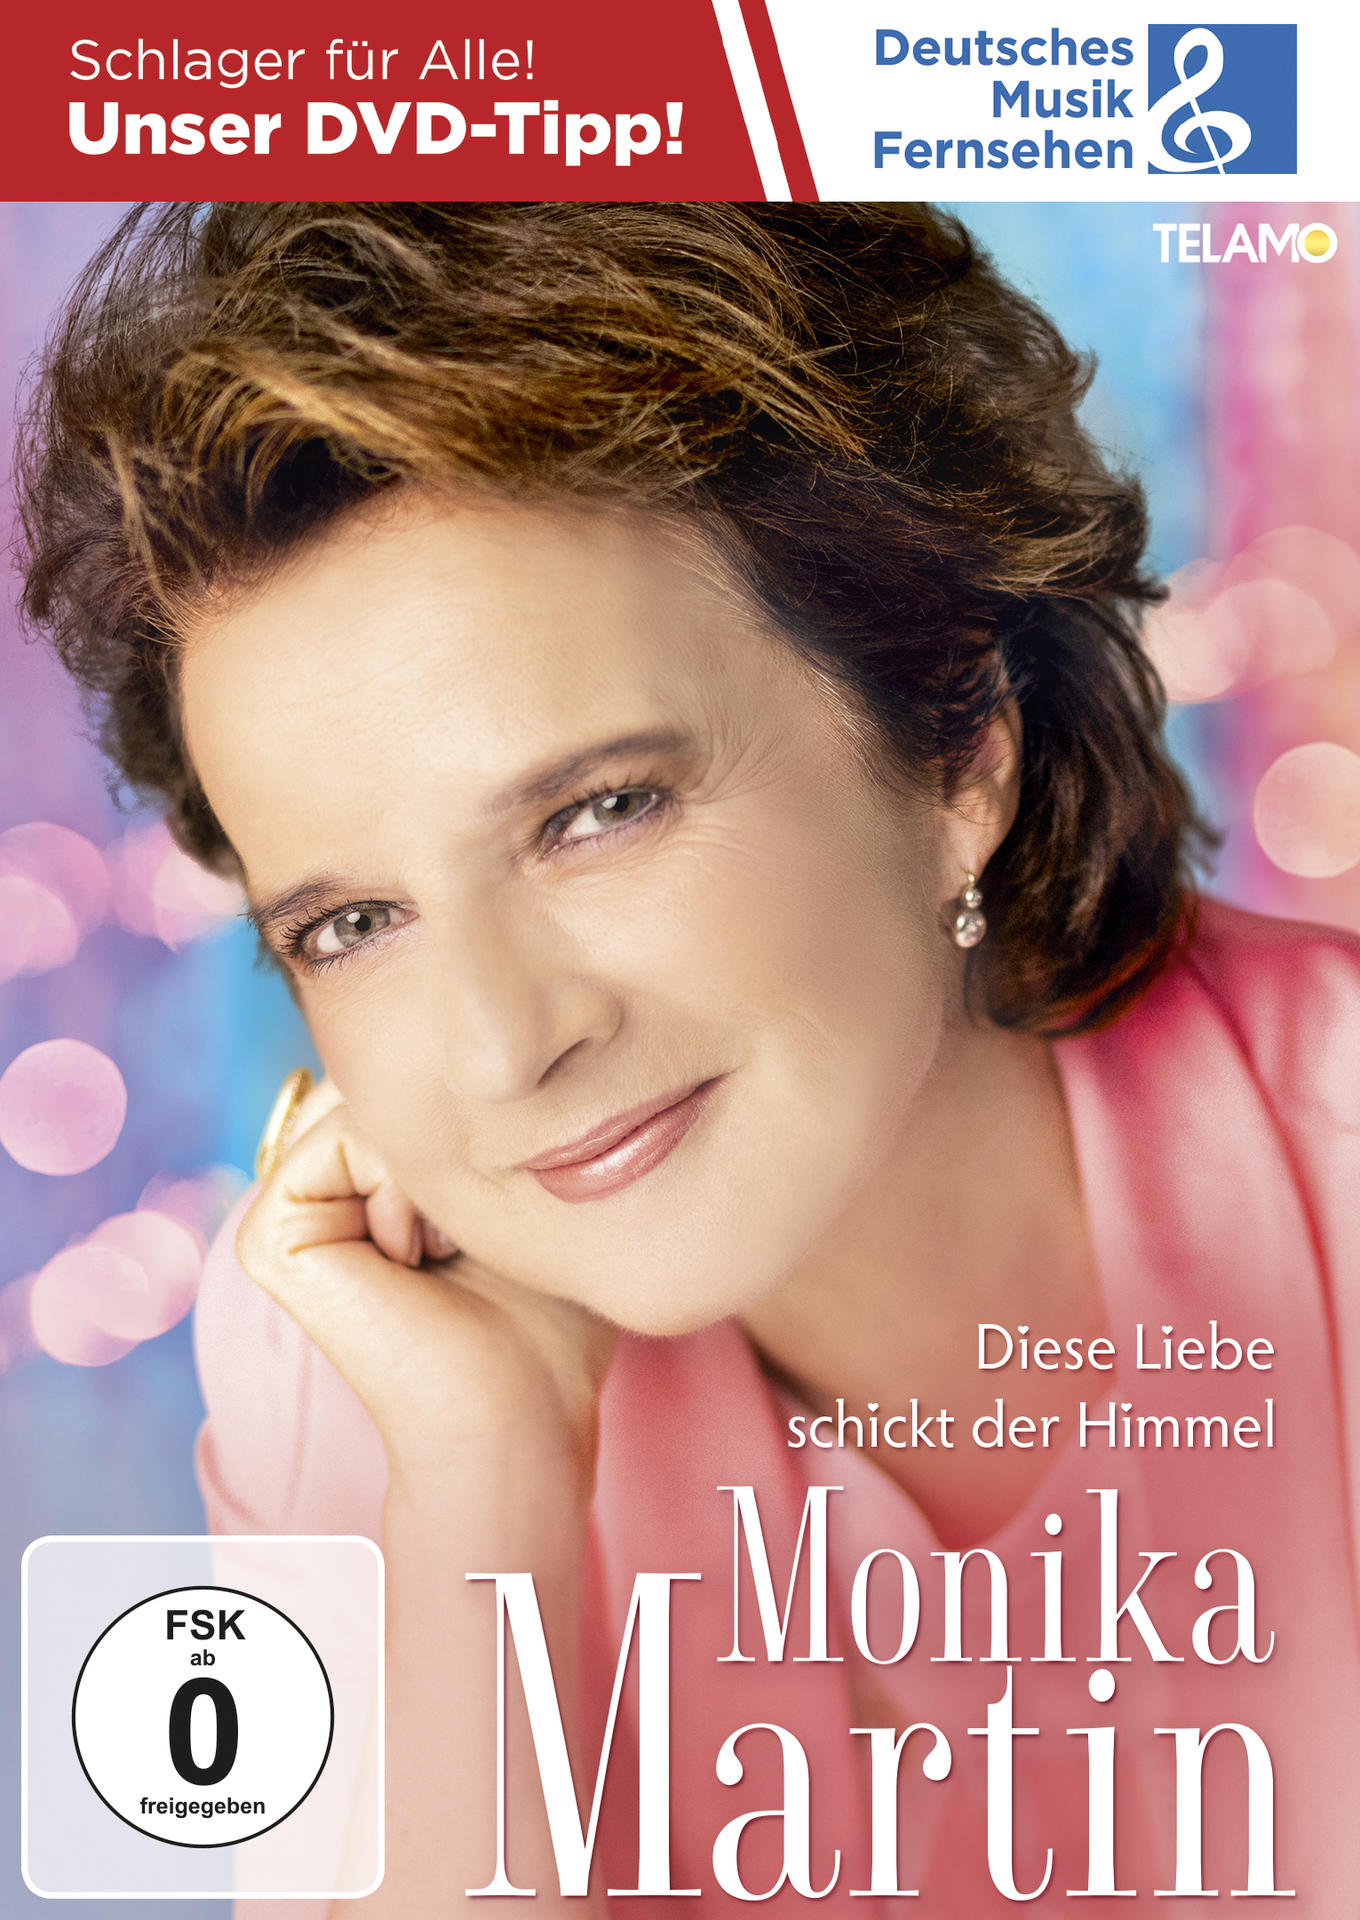 Monika Himmel - Martin - schickt Liebe (DVD) Diese der